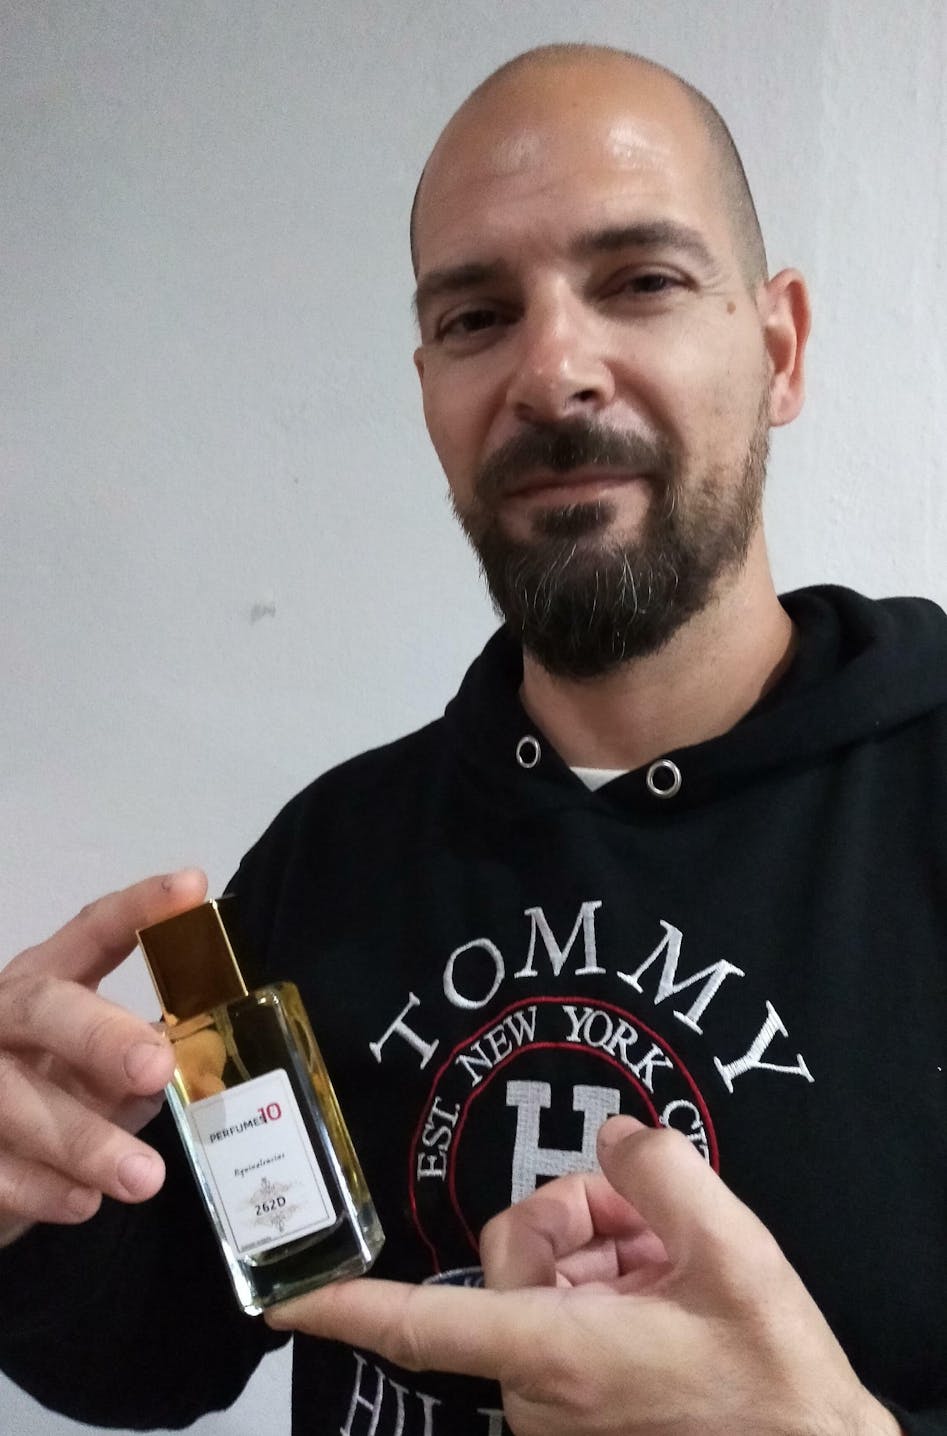 Perfume de imitación Boss Bottled de Hugo Boss hombre – Perfumes10